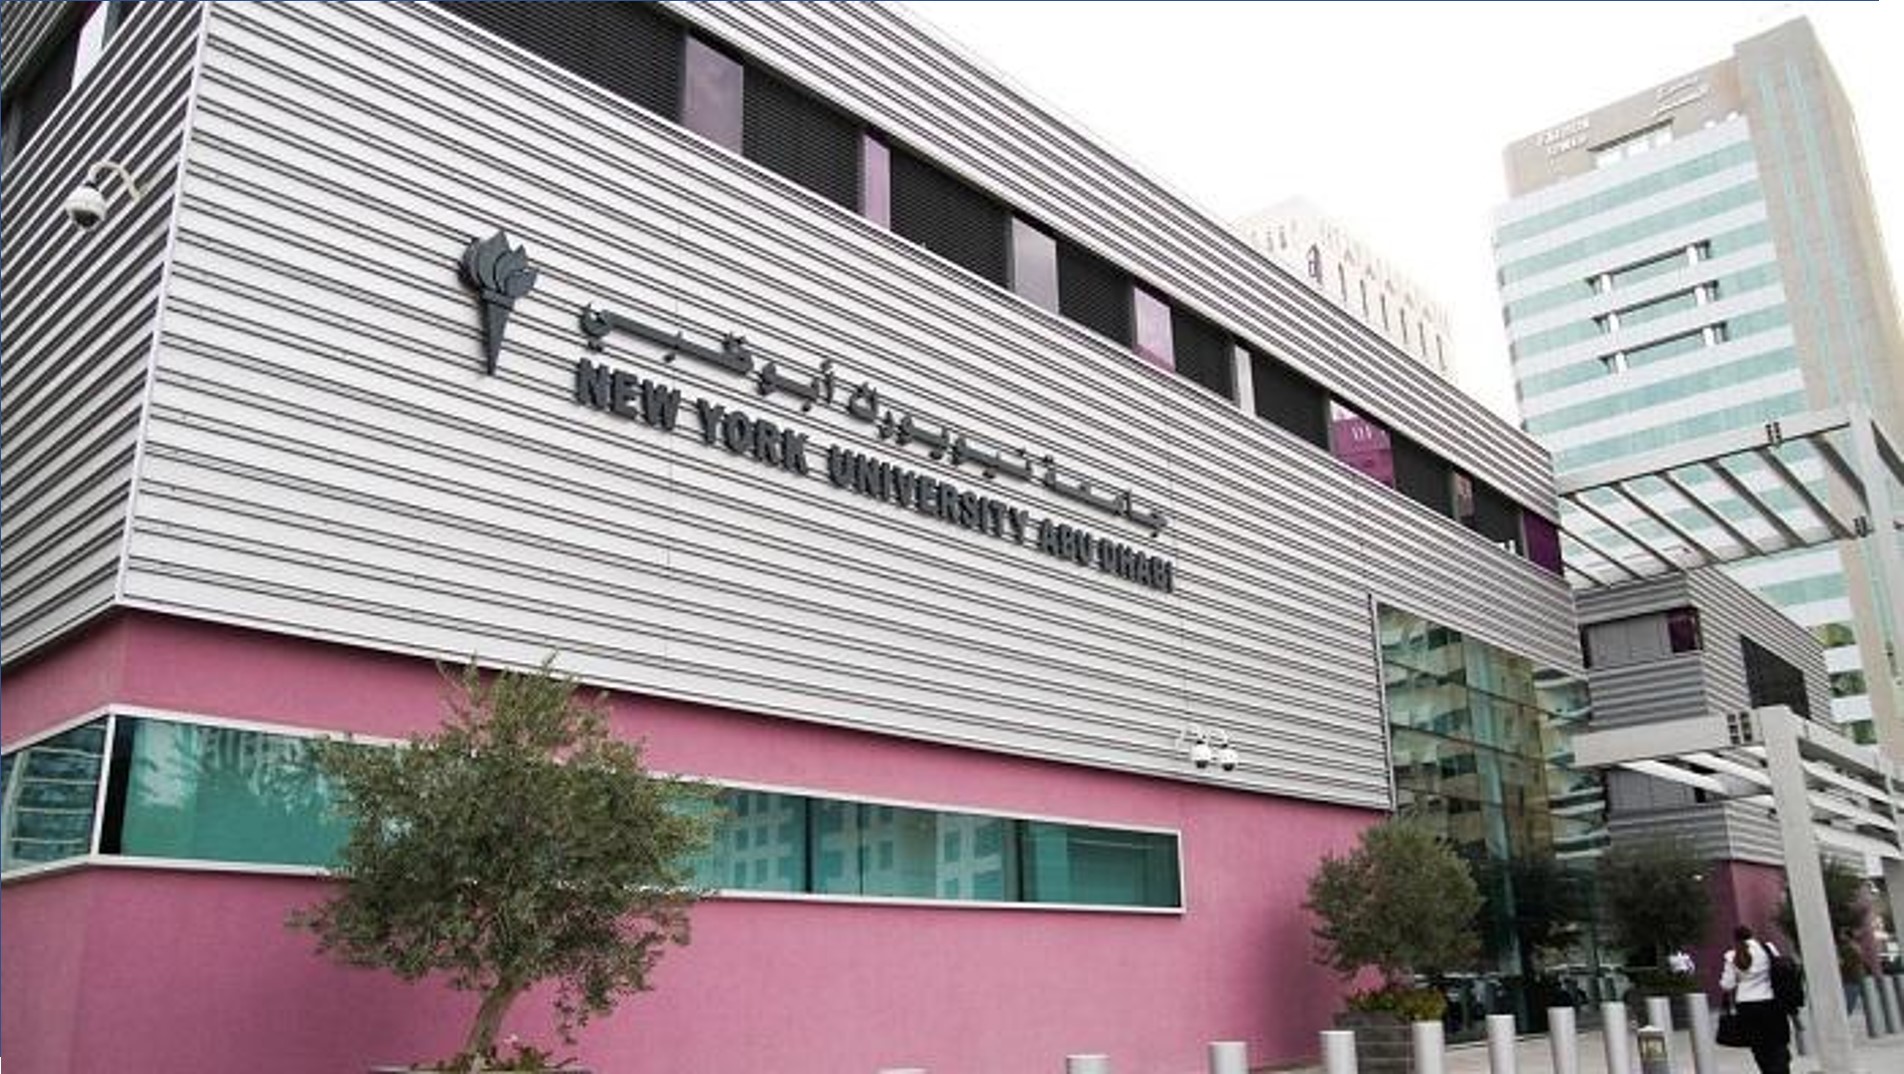 وظائف جامعة نيويورك في ابوظبي لعدة تخصصات